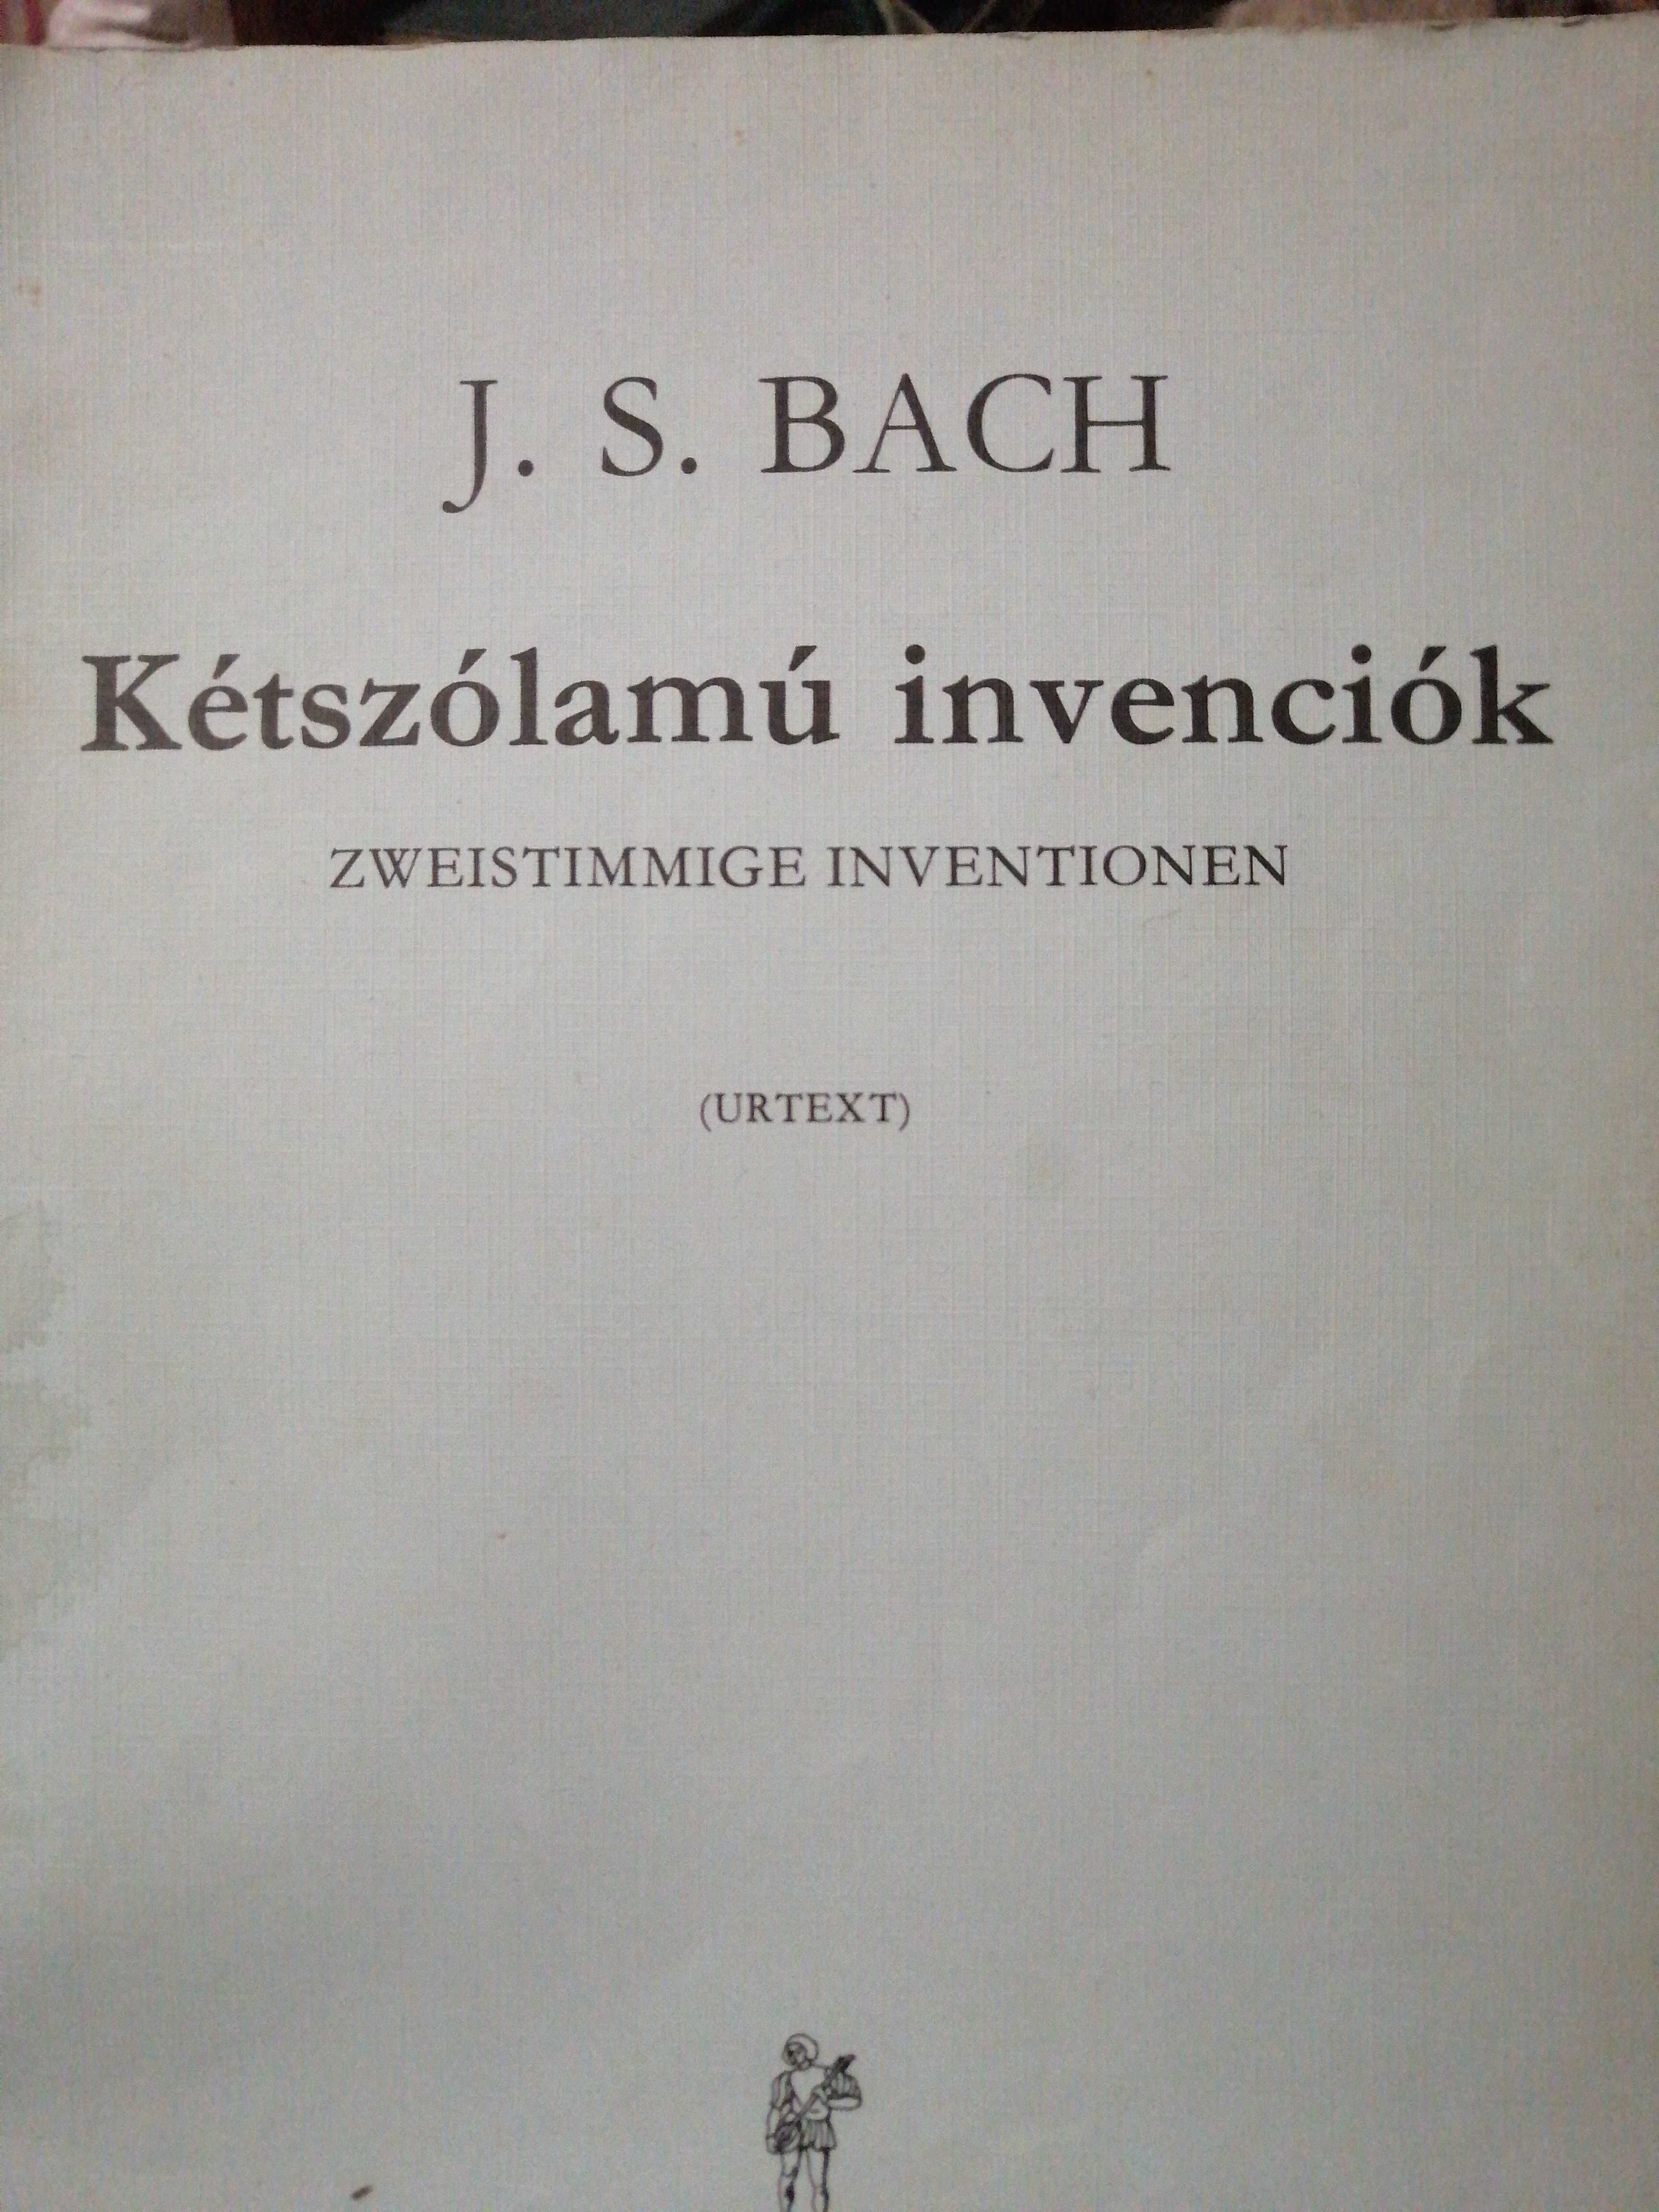 Сборник И. С. Бах (ноти для фортепиано)